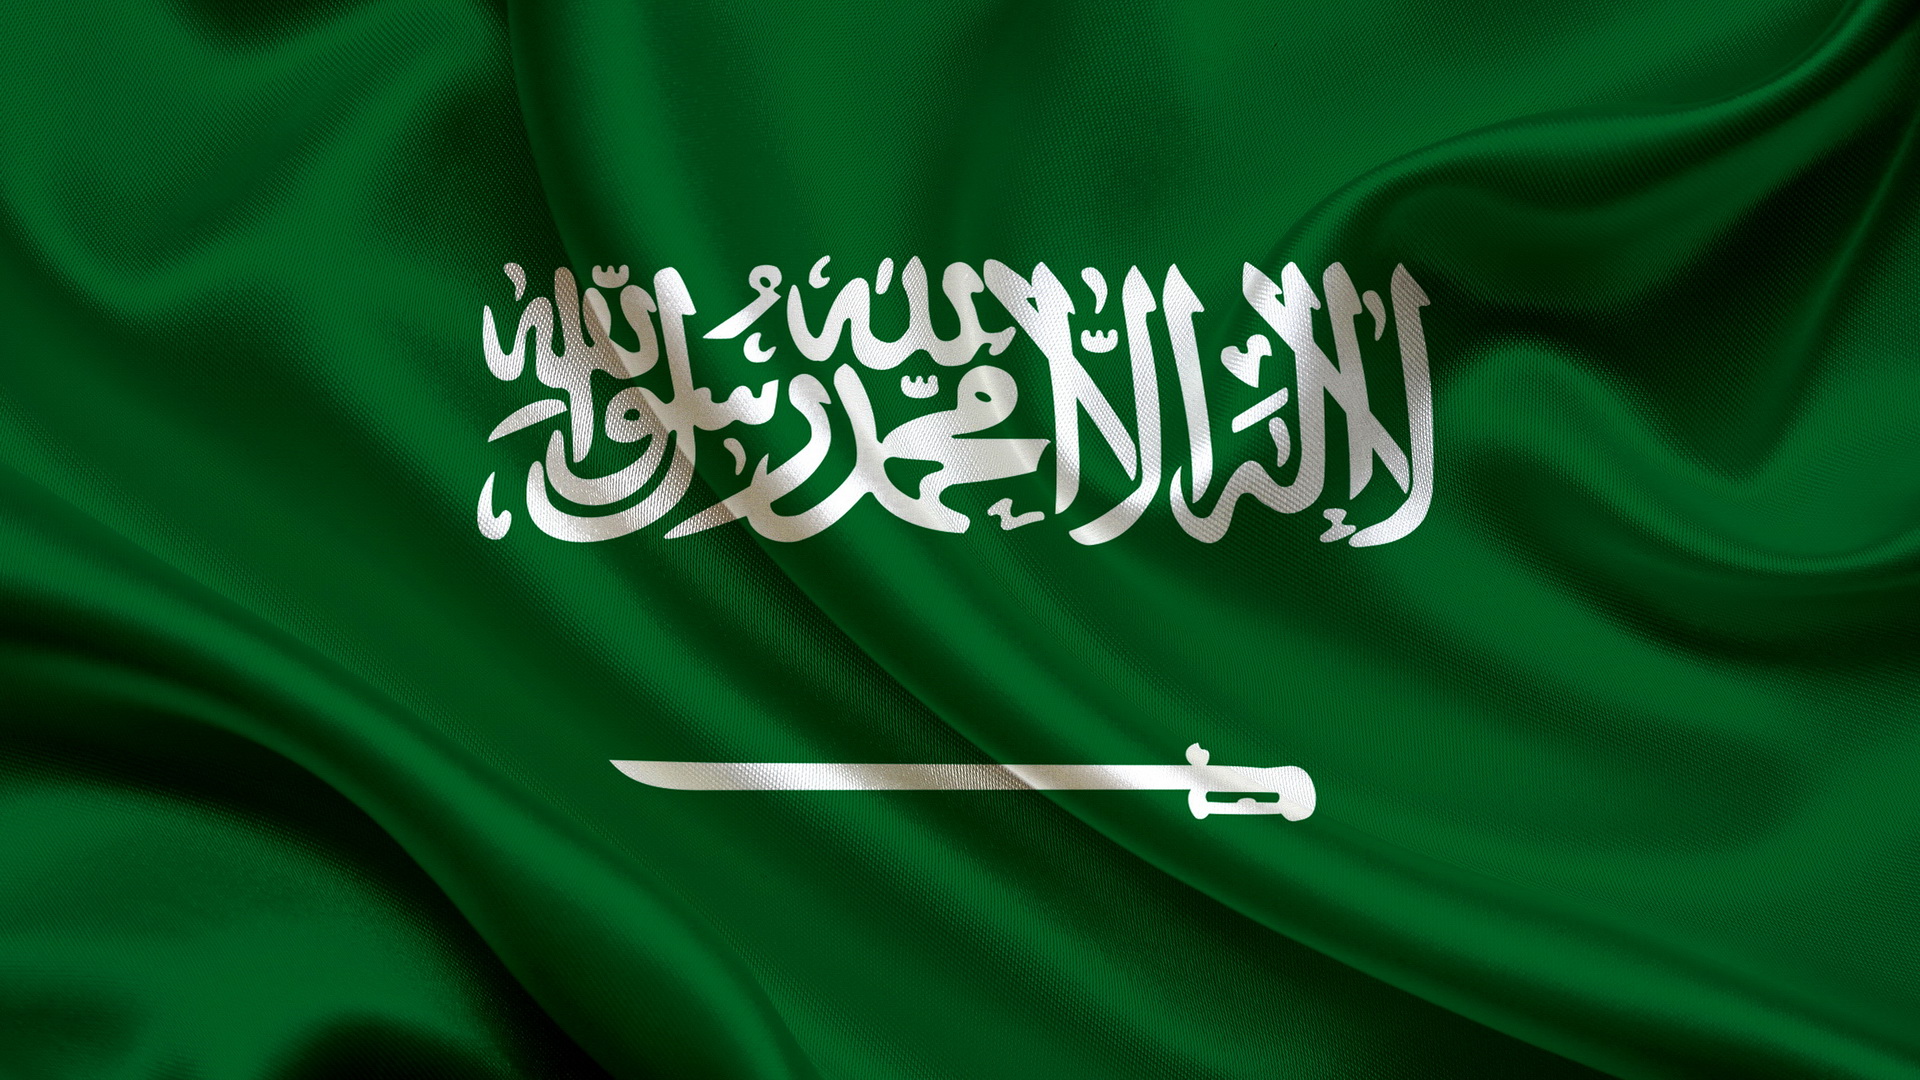 Saudi Arabia Flag Wallpaper Image